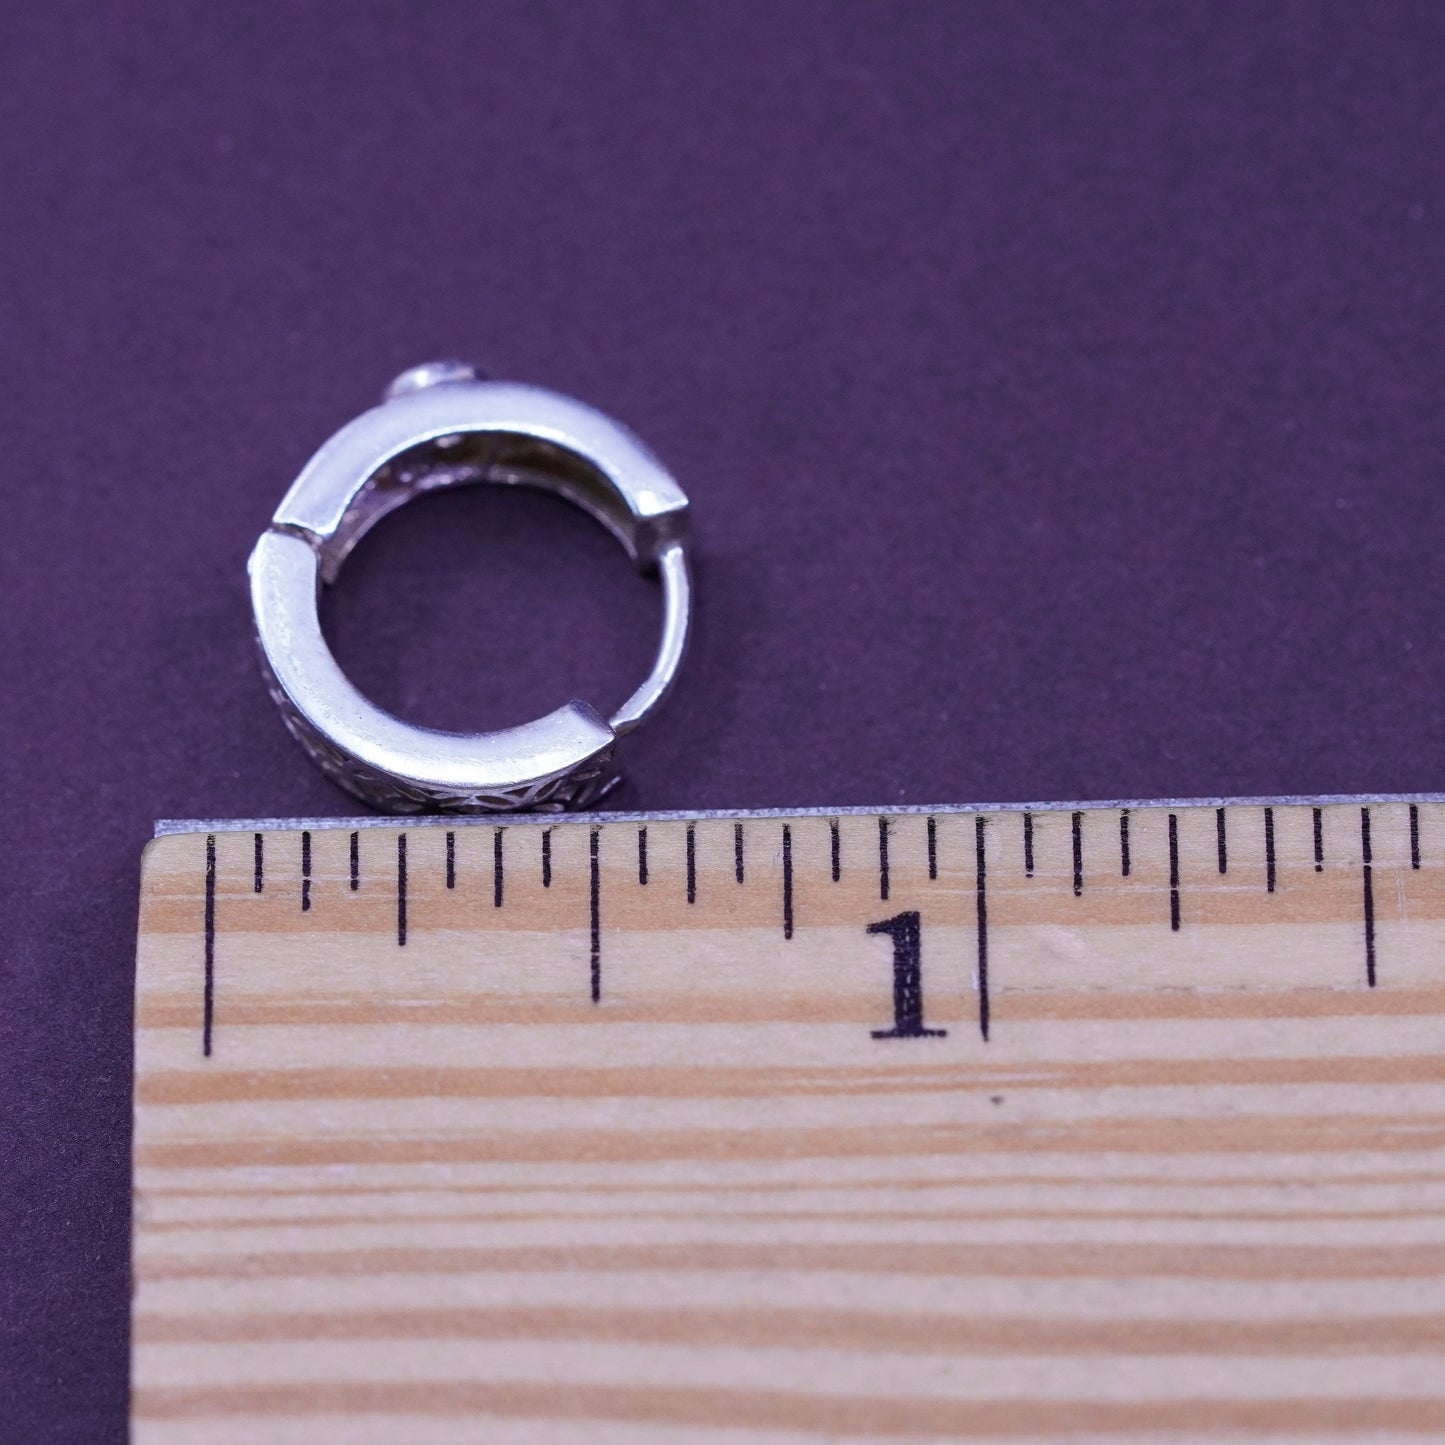 0.5”, vintage Sterling silver handmade earrings, filigree 925 hoops with Cz